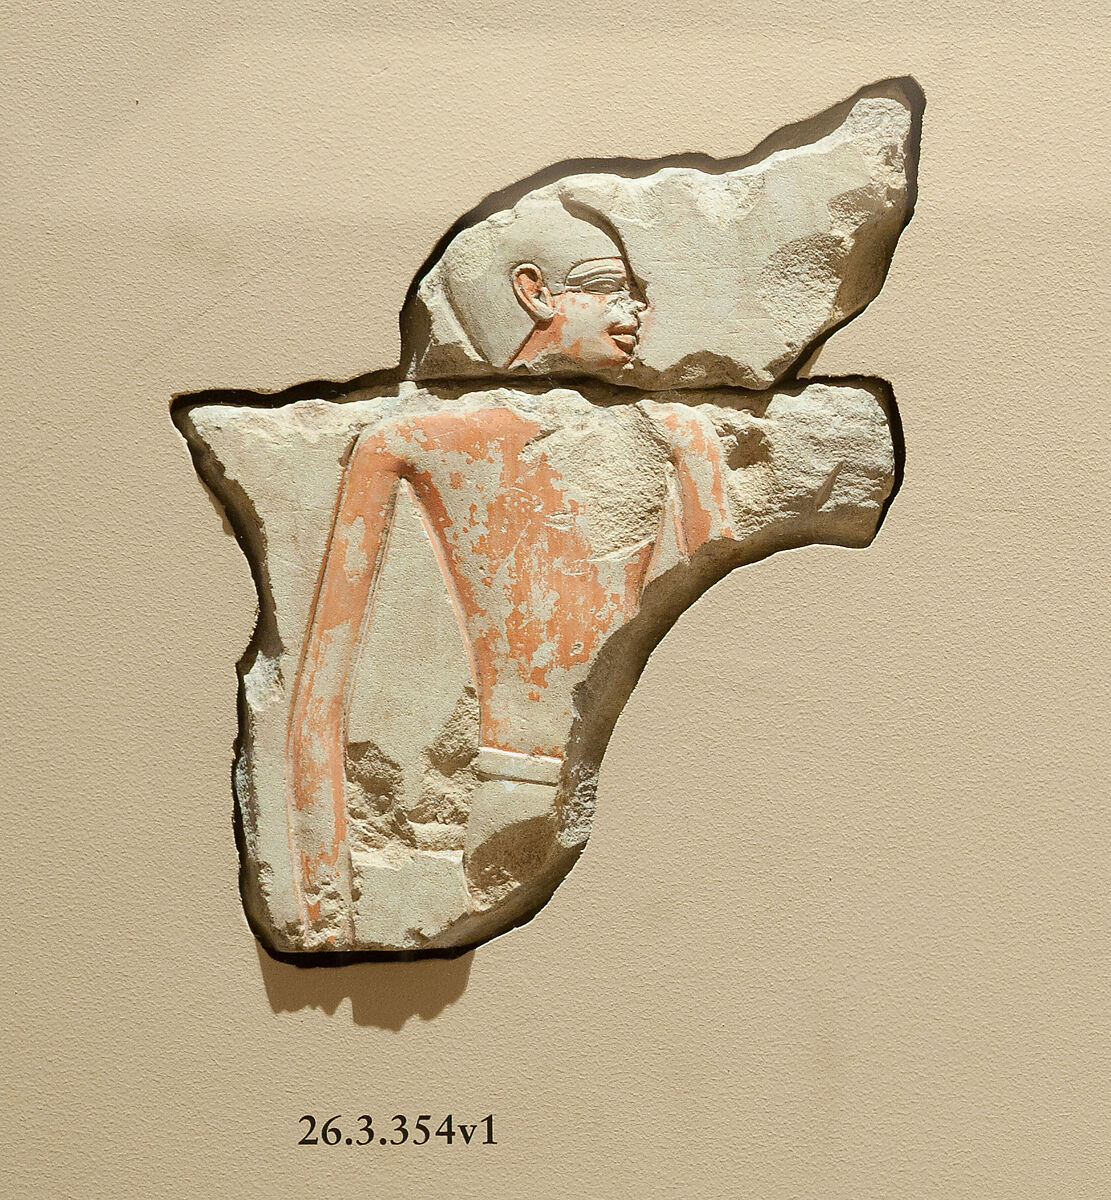 Male figure from offering scene, Limestone, paint 